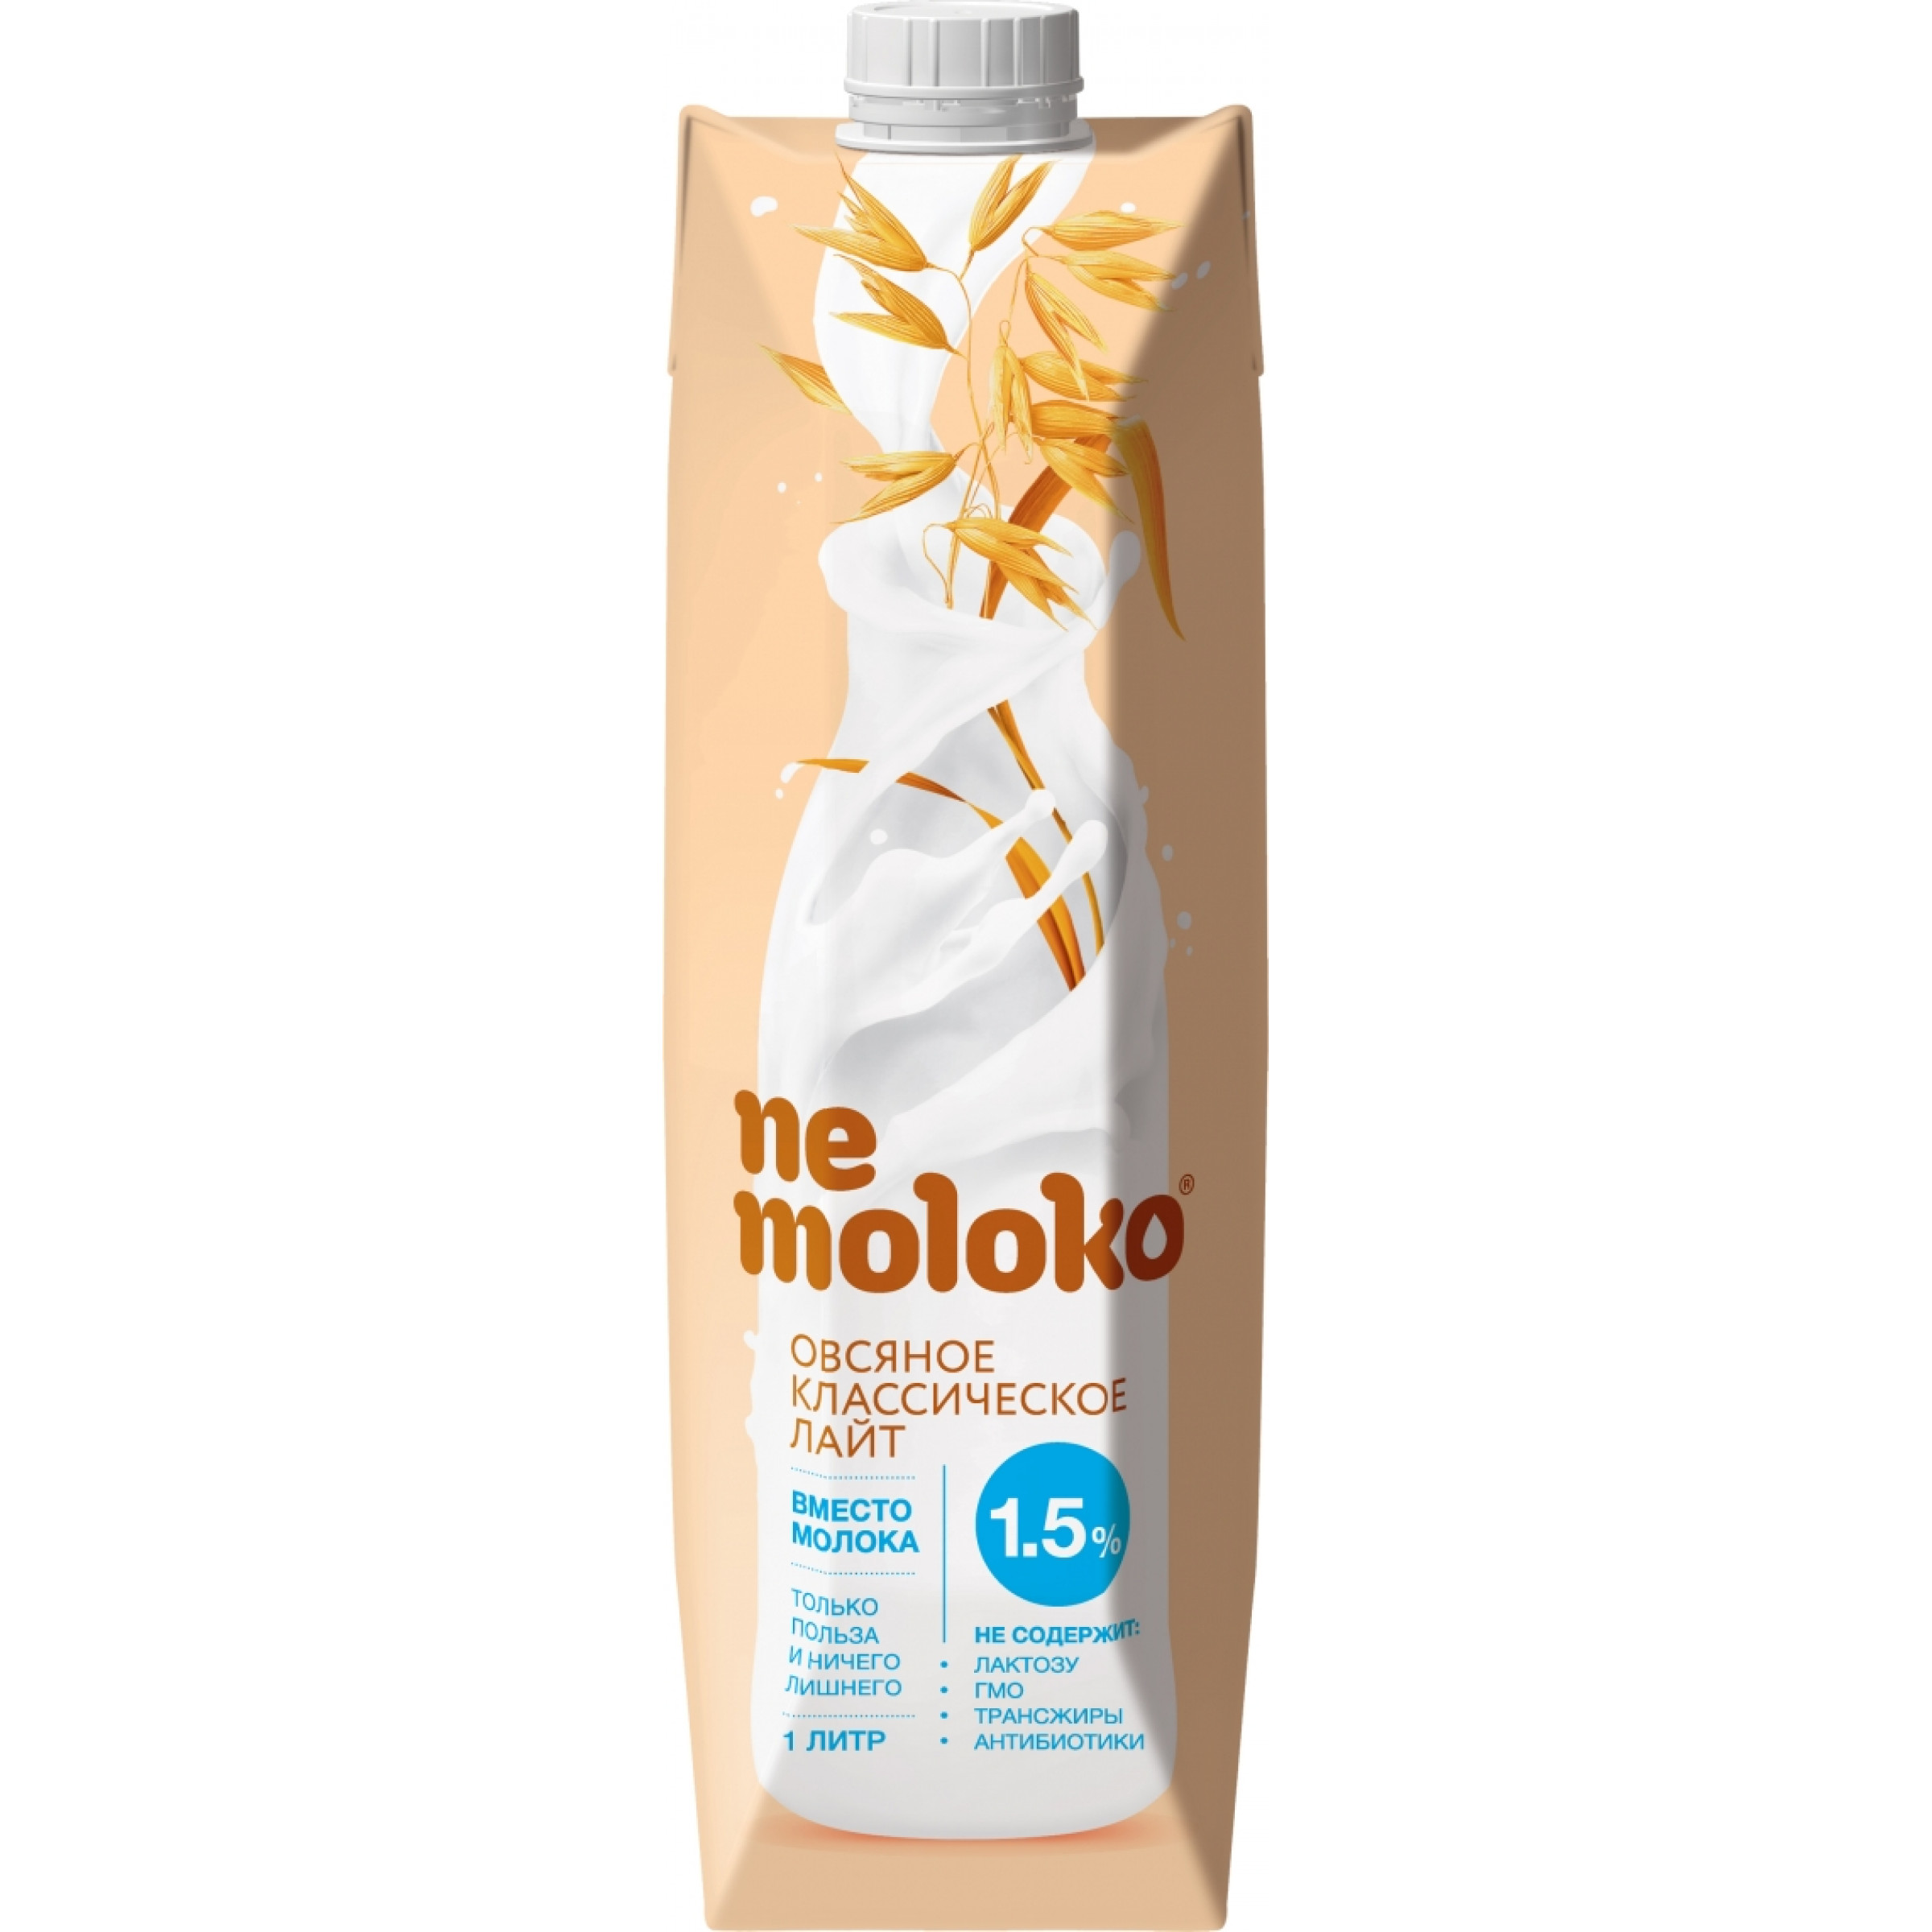 Напиток Nemoloko 1,5% овсяное классическое лайт, 1л.